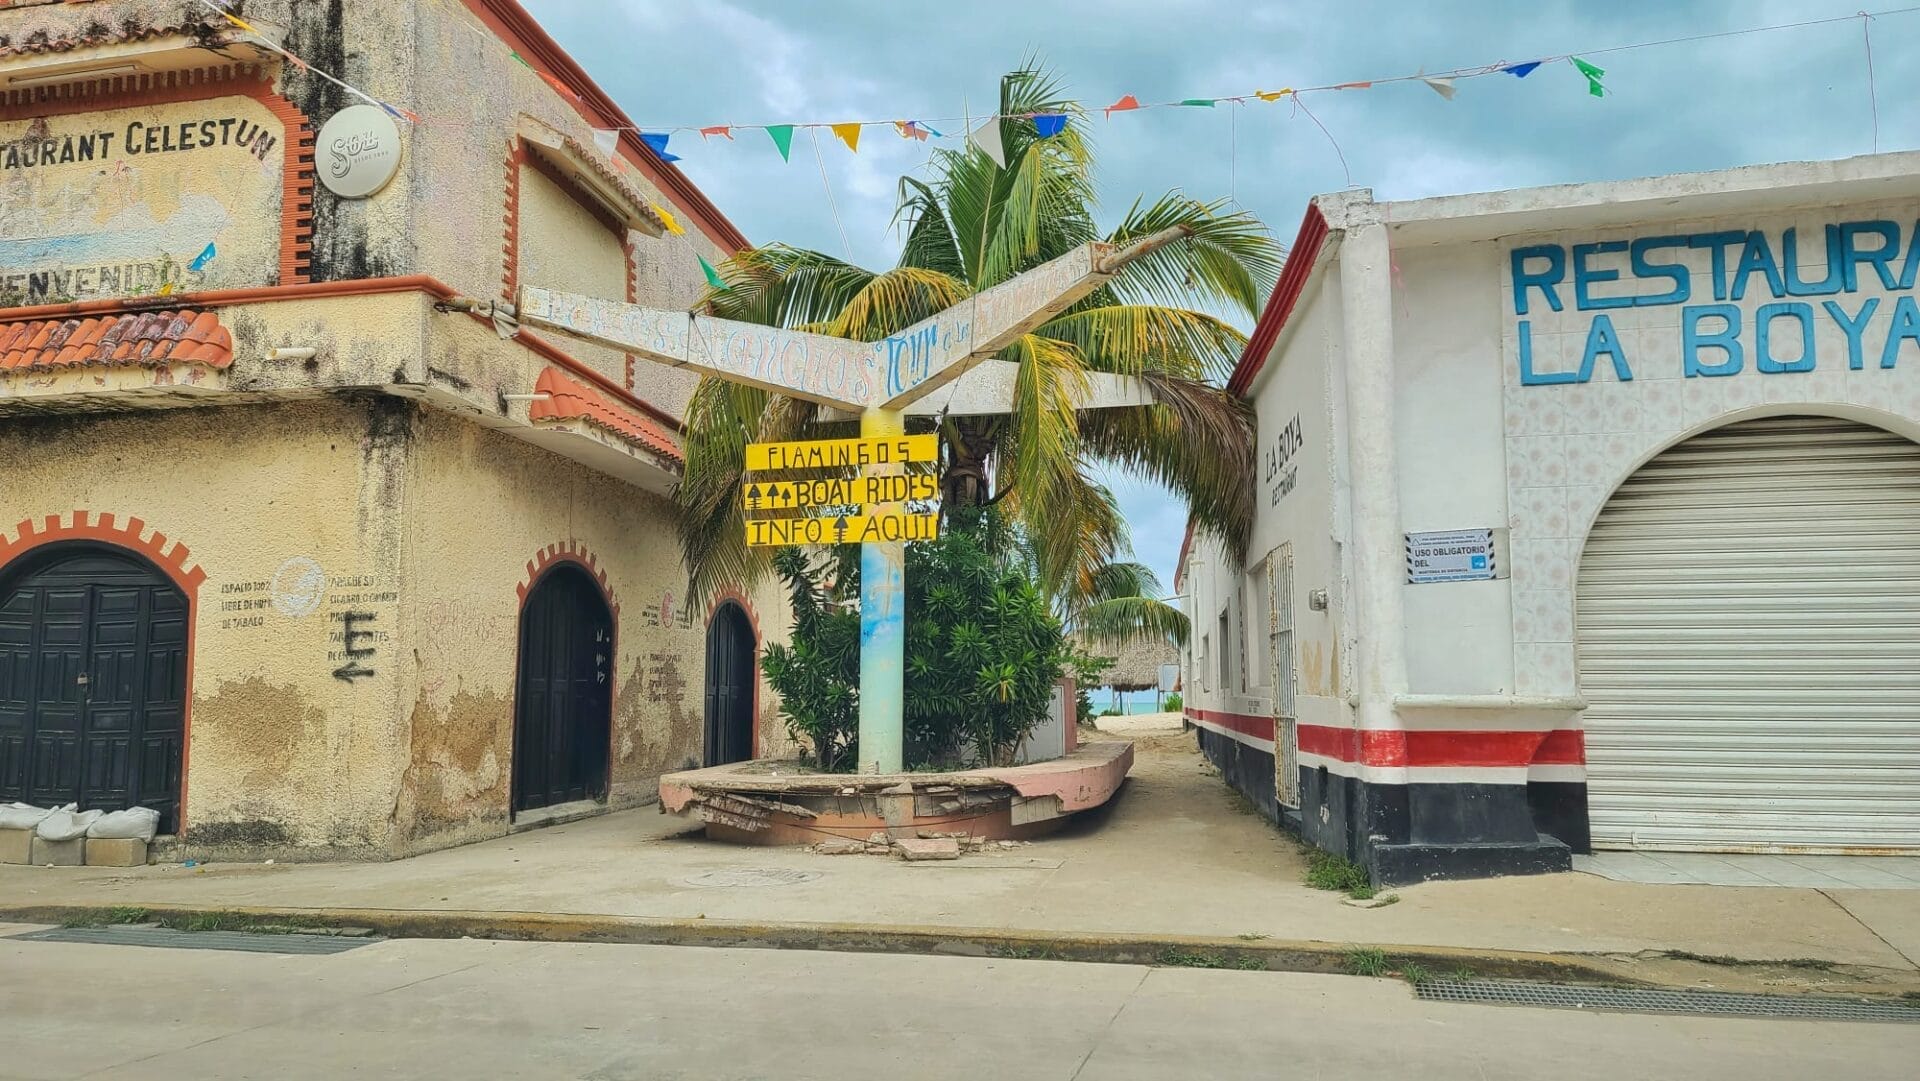 Celestun town - Where to see wildlife near Cancun, Mexico